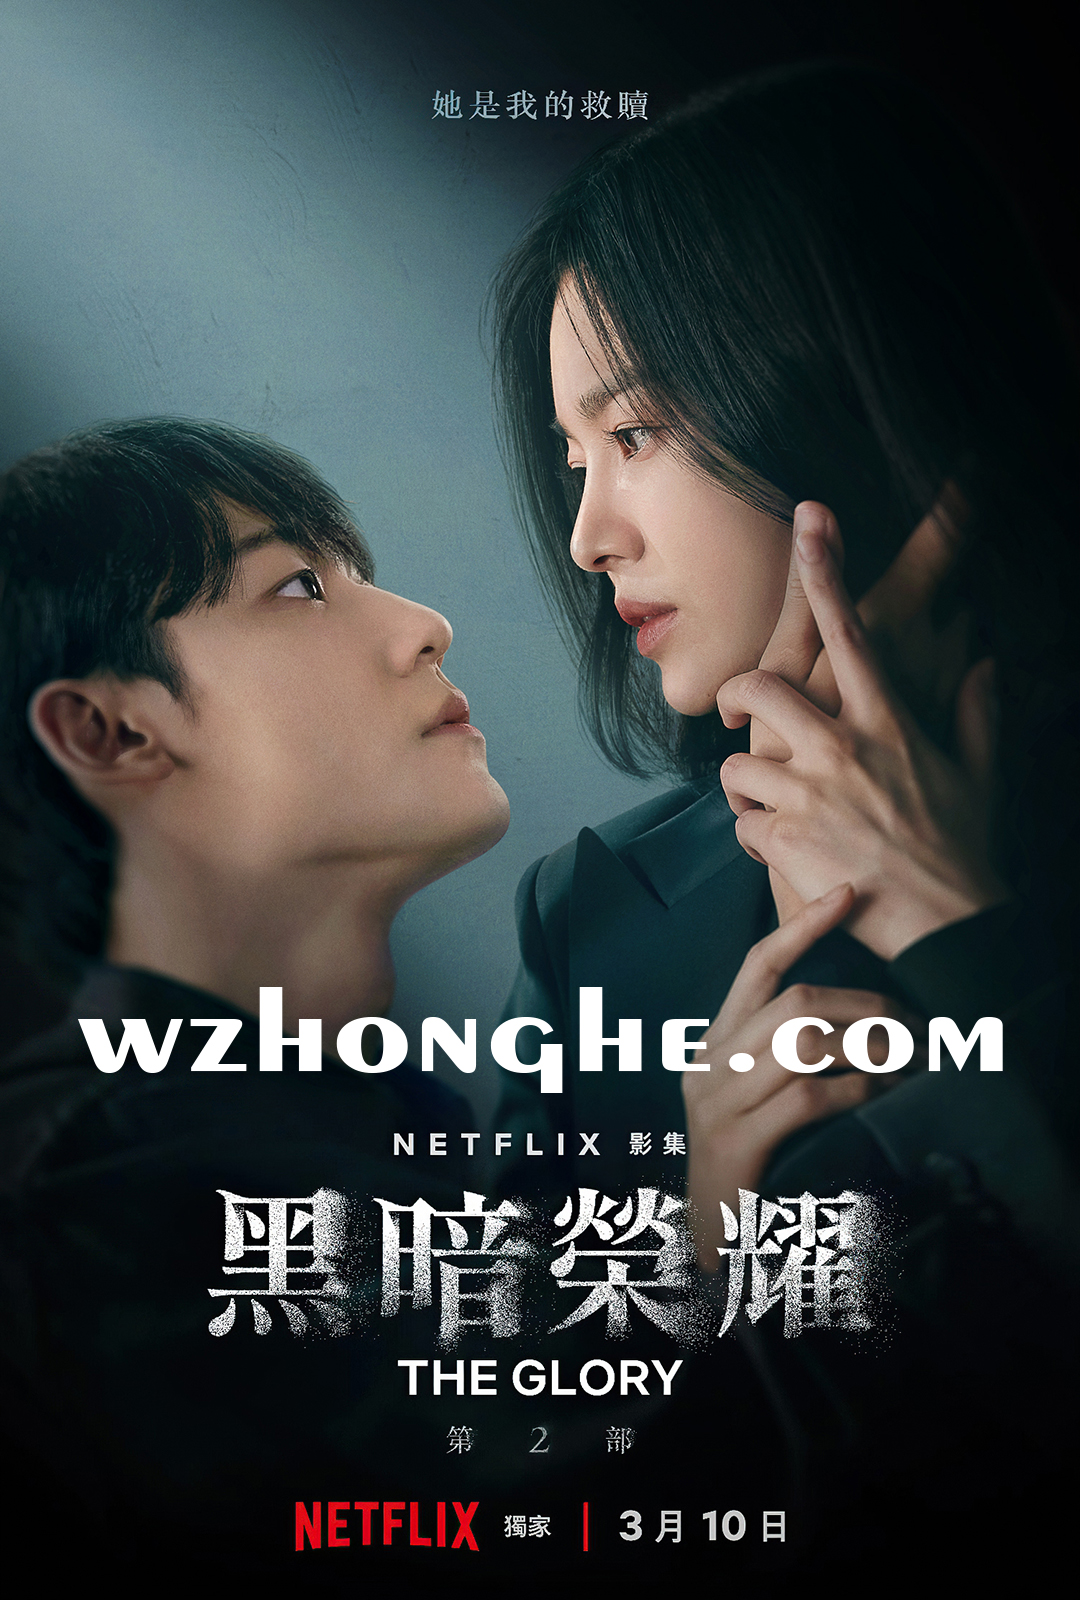 《黑暗荣耀2》- 无中和wzhonghe
.com -1